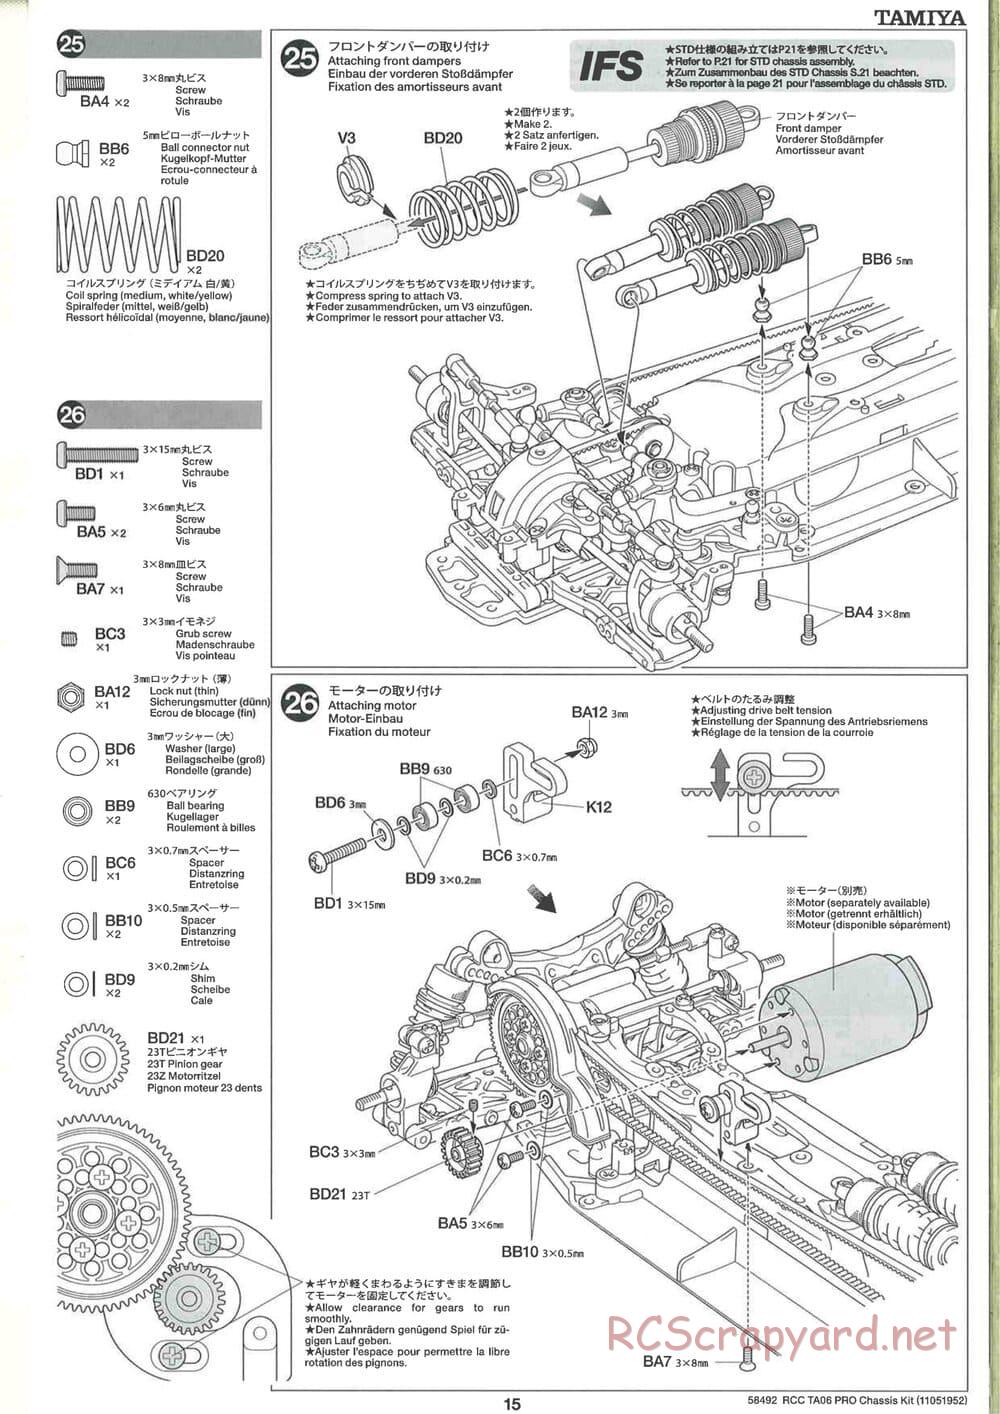 Tamiya - TA06 Pro Chassis - Manual - Page 15